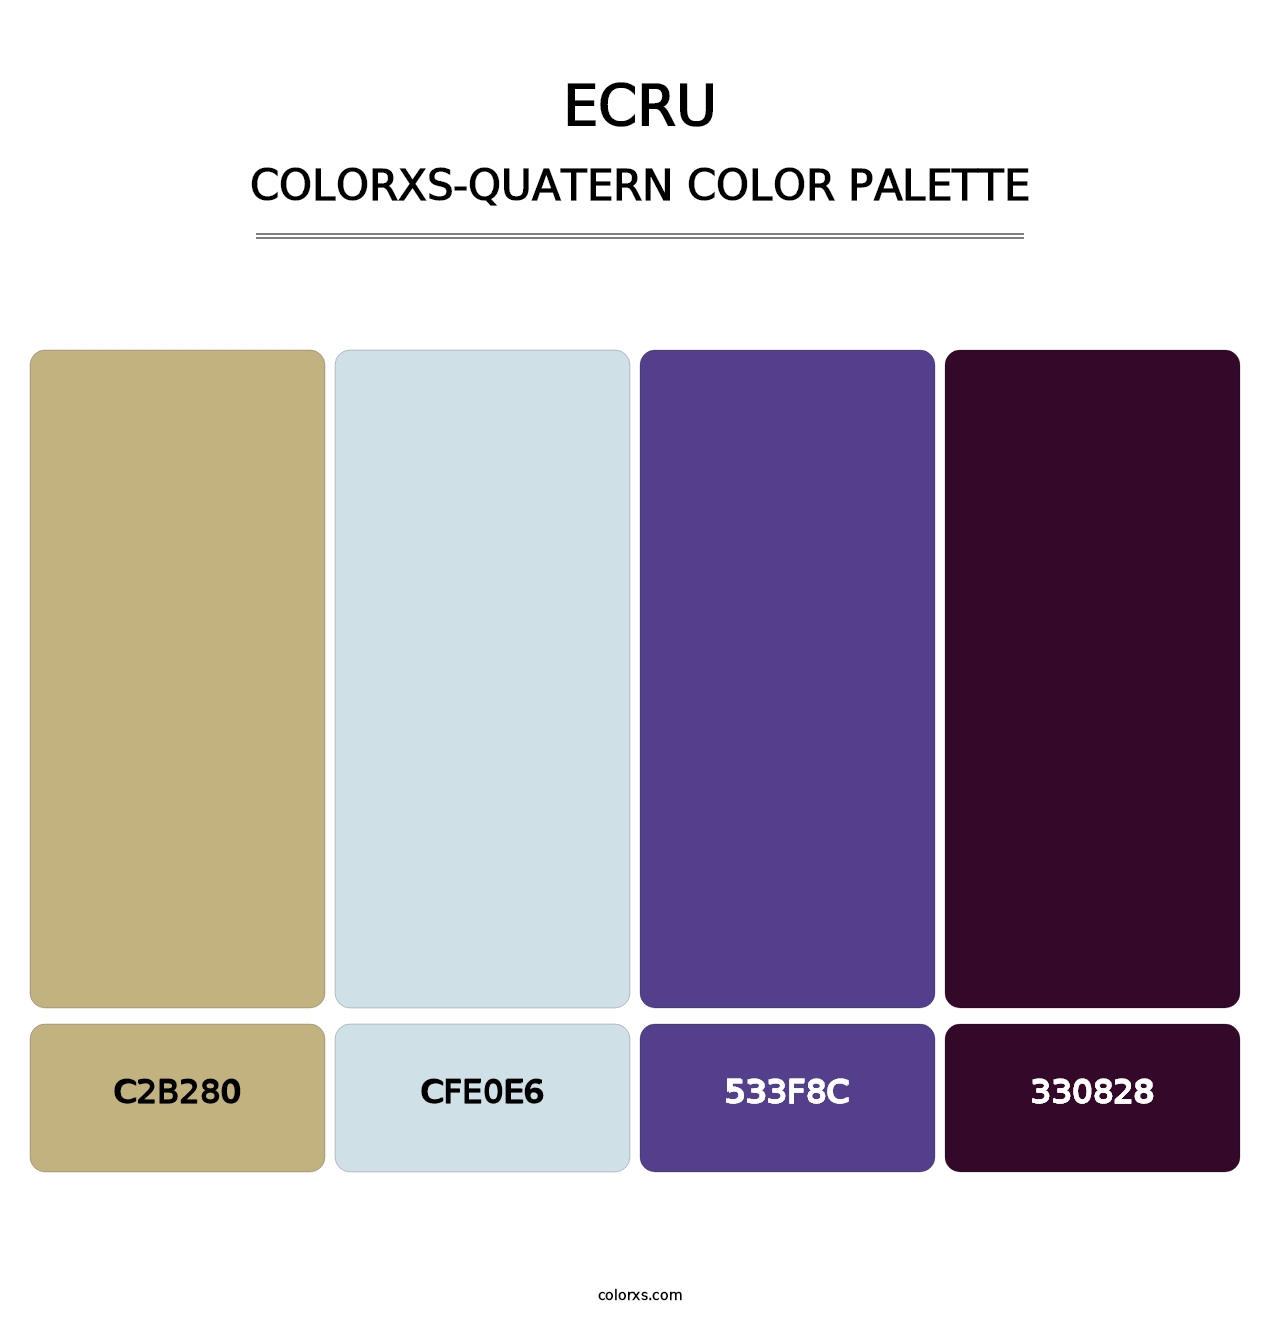 Ecru - Colorxs Quatern Palette